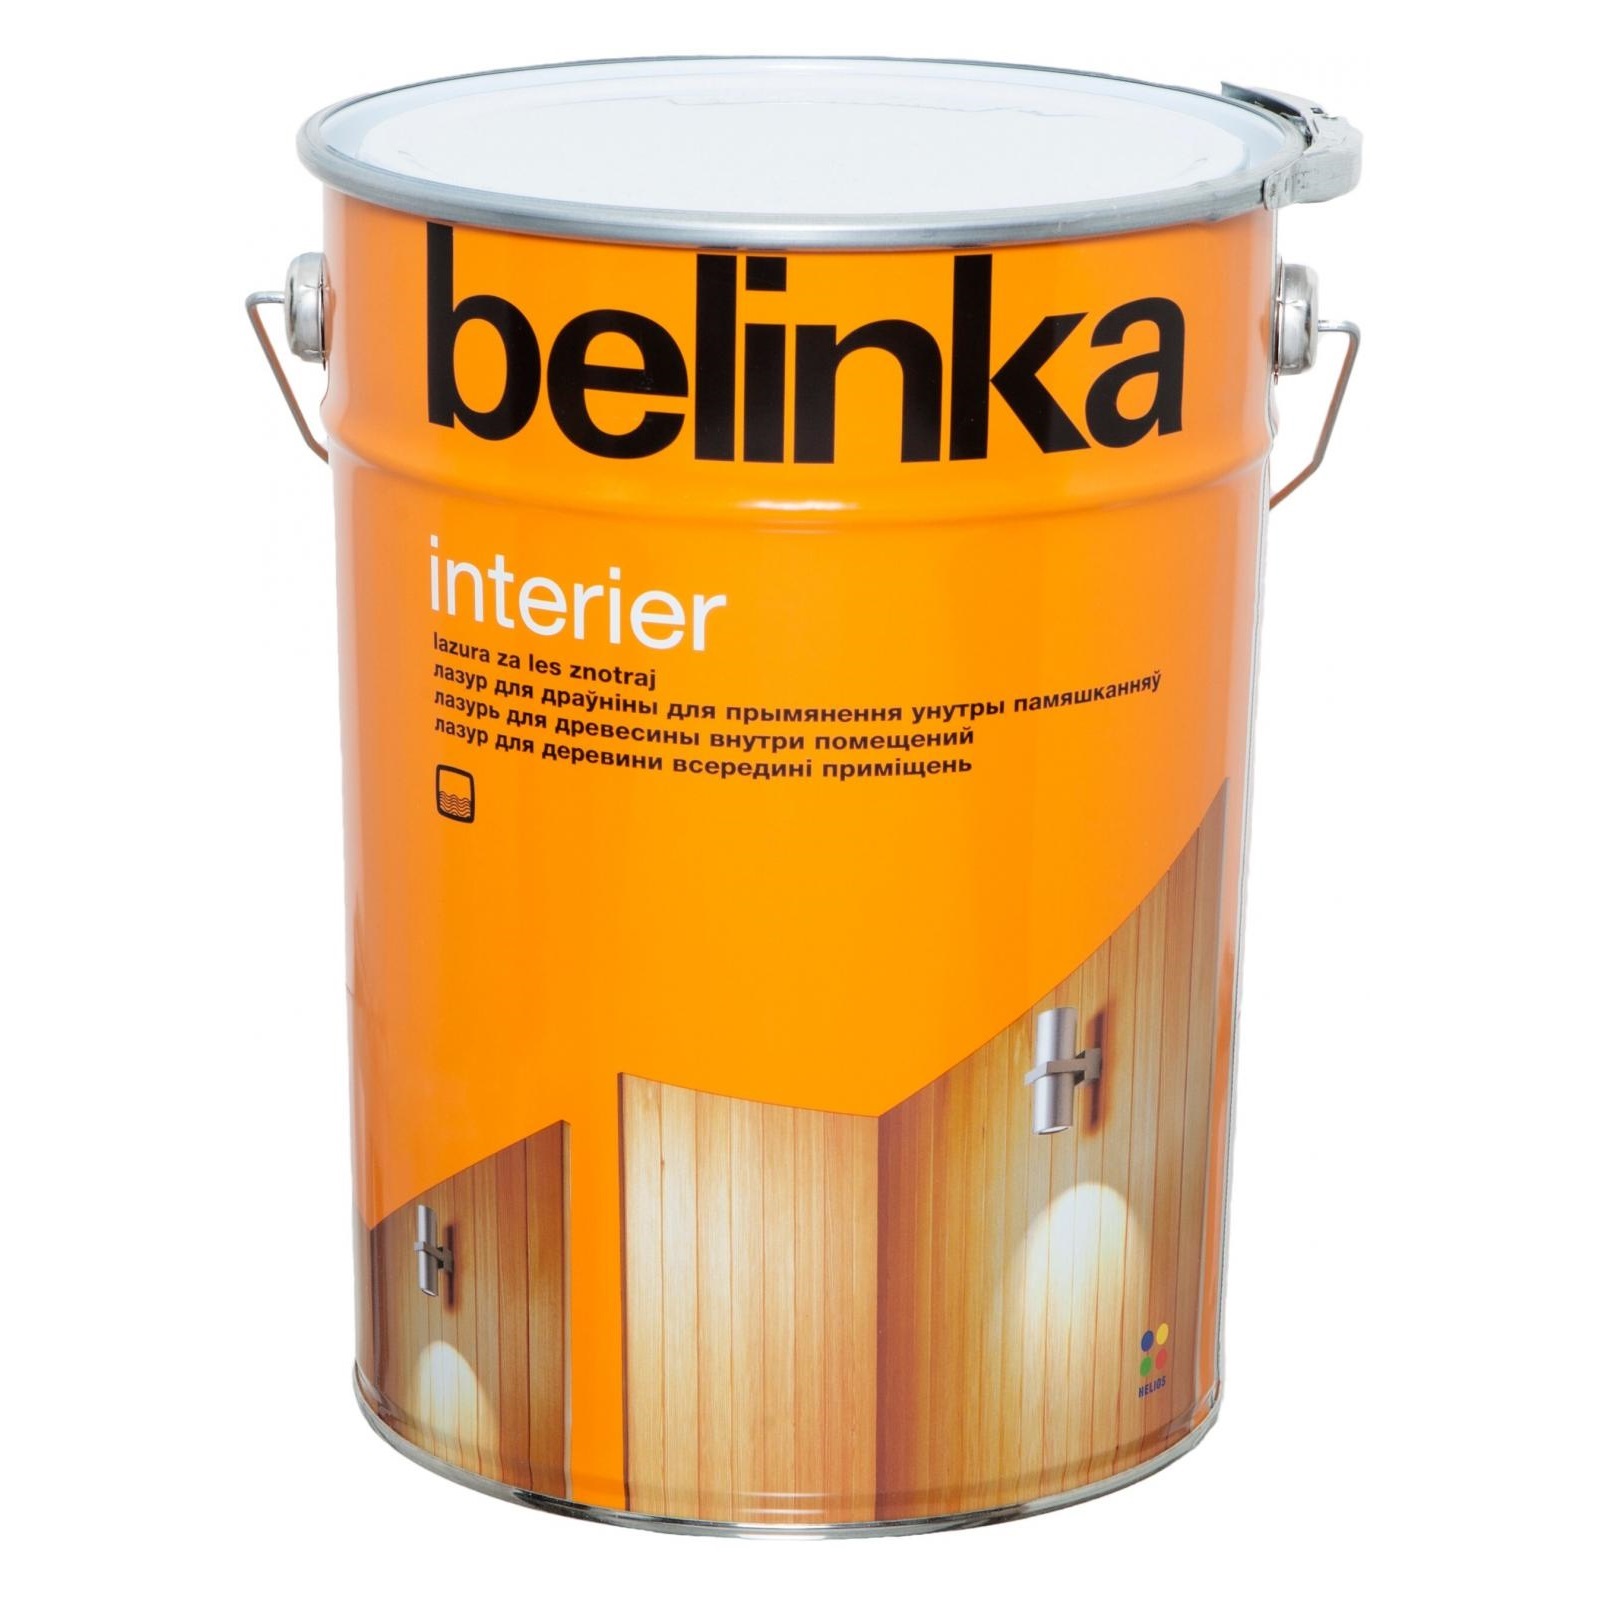 Лазурь Belinka Interier №69 0.75л горячий шоколад лазурь belinka interier 67 0 75л ориентально оранжевый